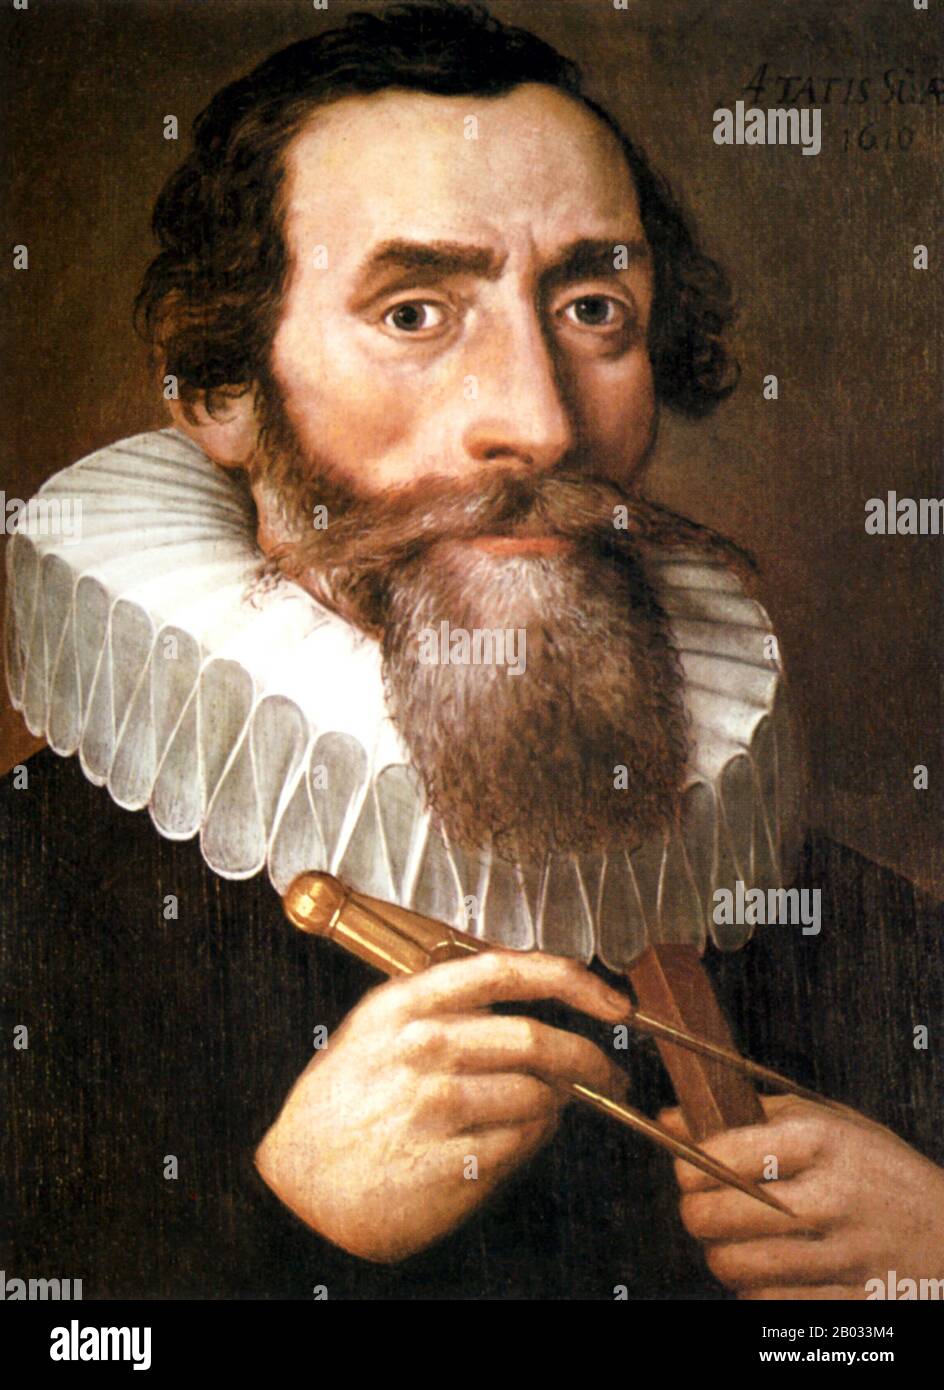 Johannes Kepler: Las leyes del movimiento planetario - Chicks Gold